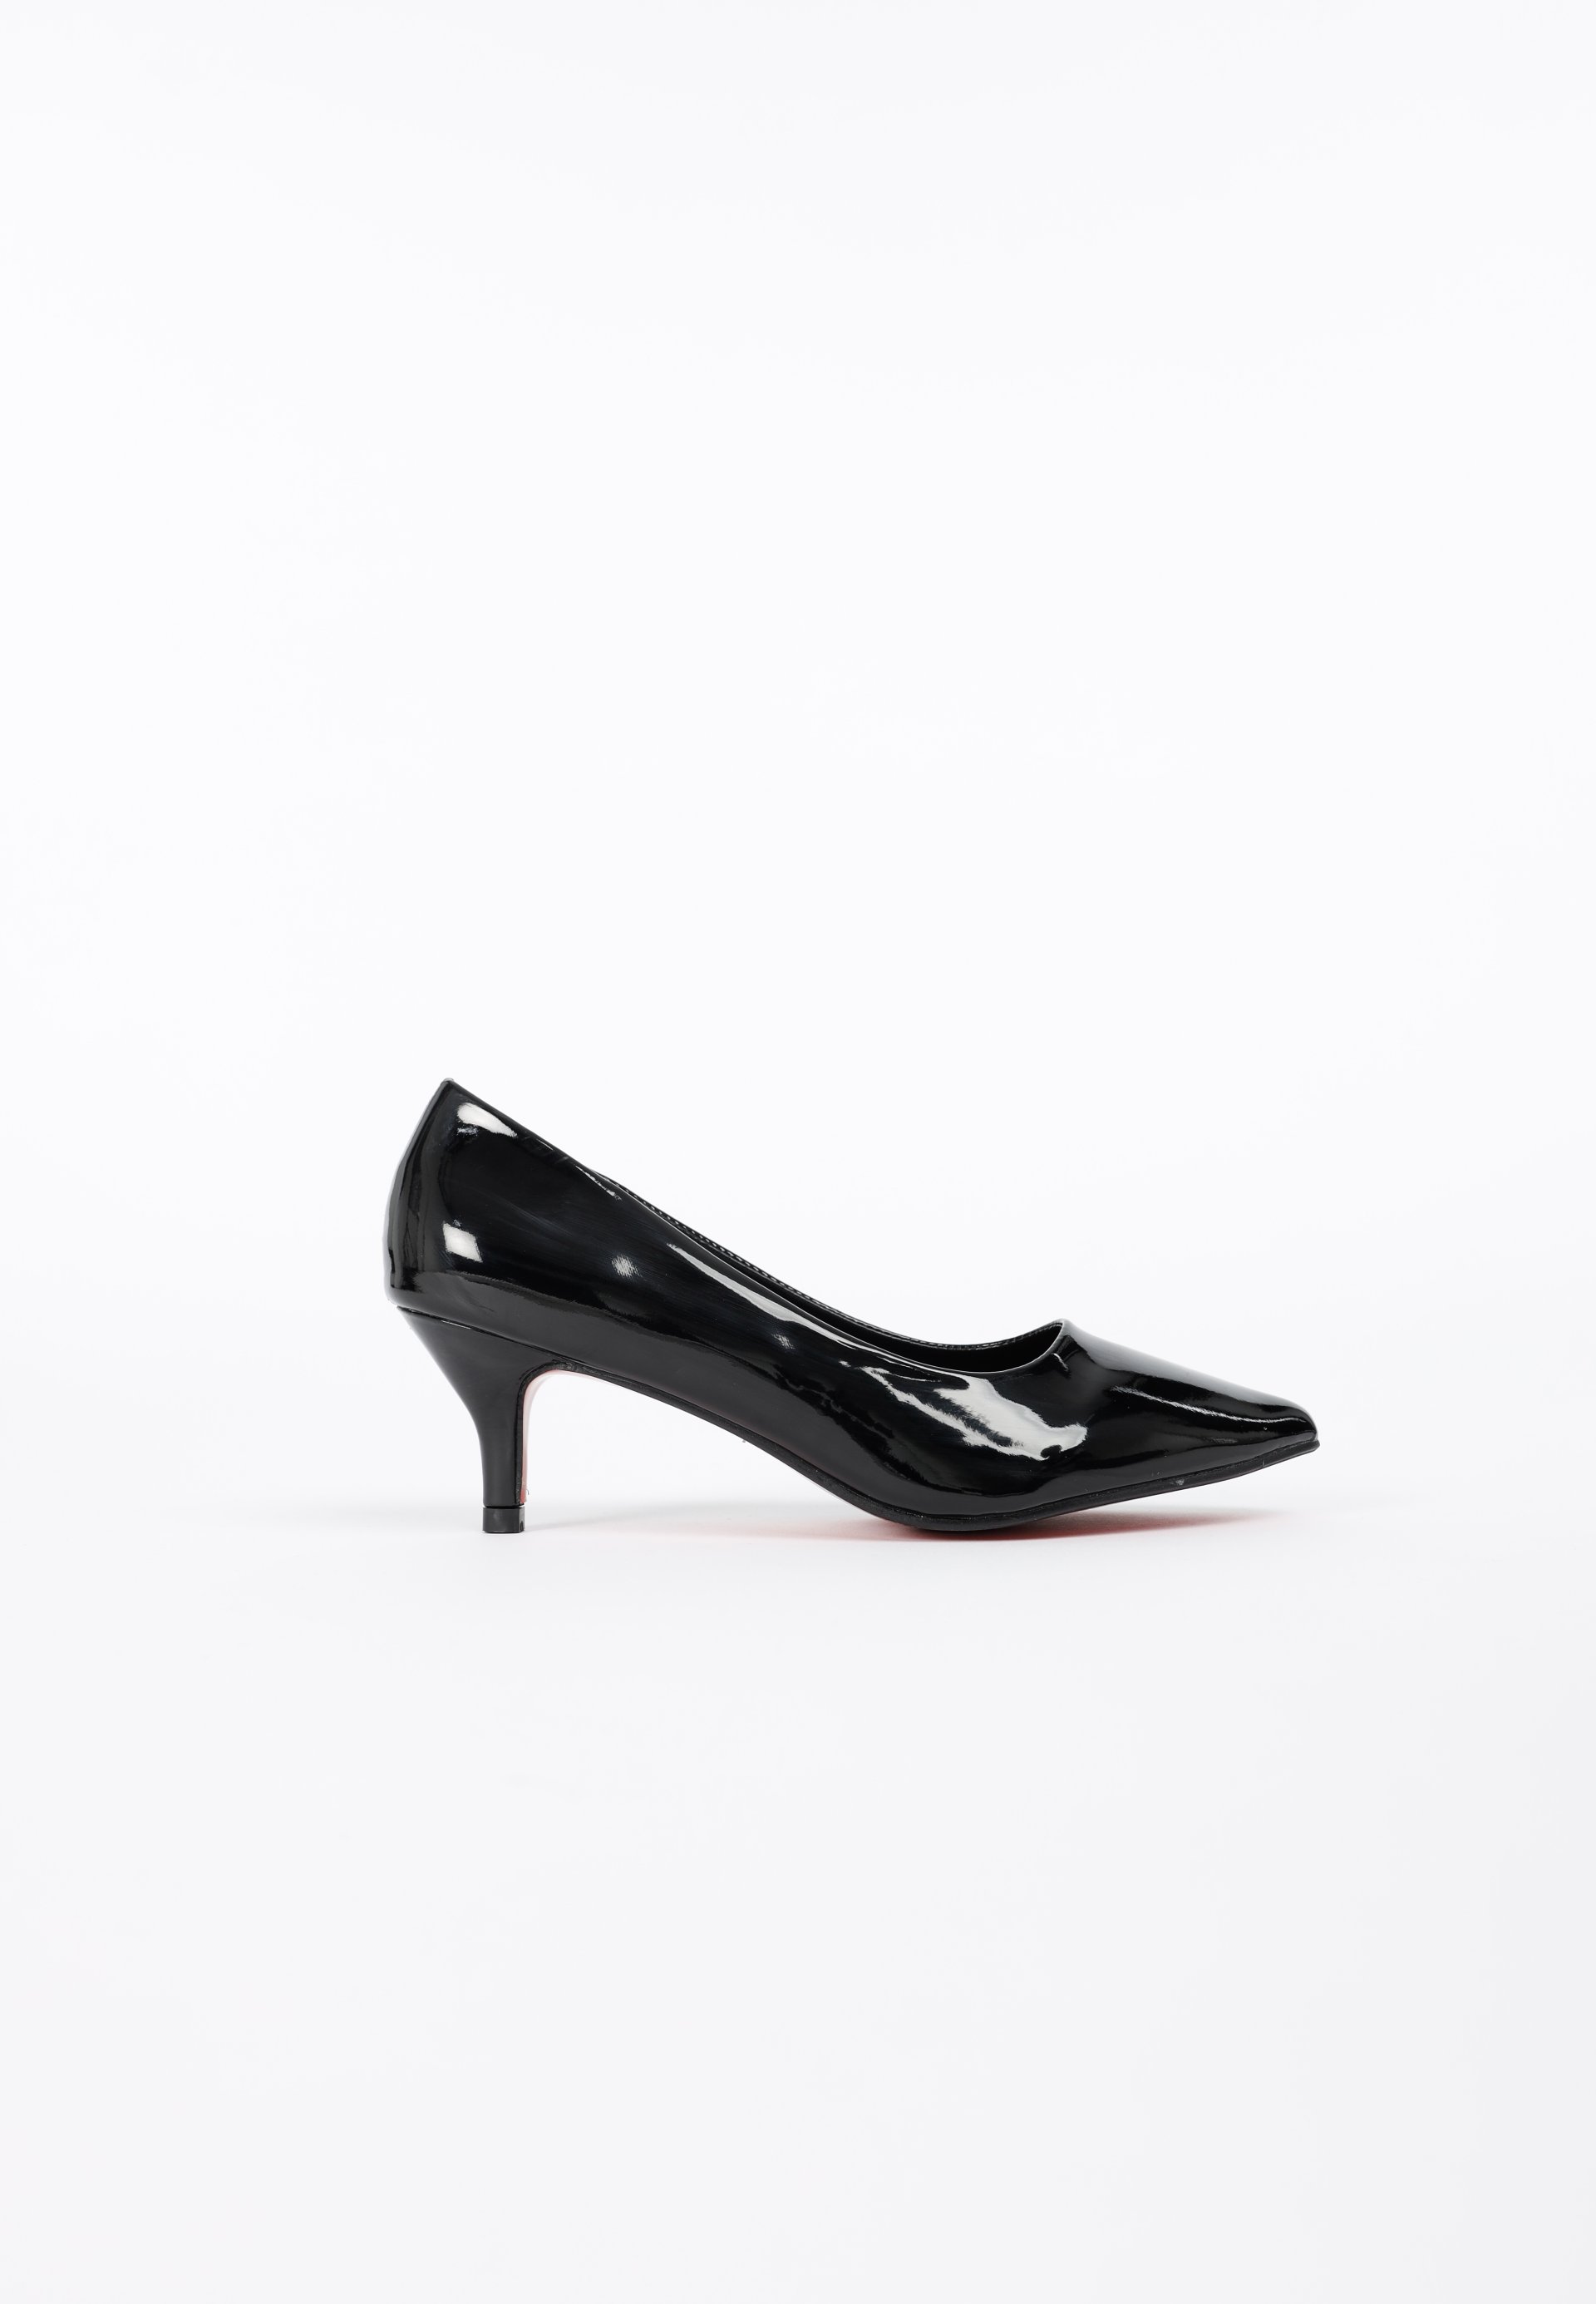 รองเท้าส้นเตี้ย ดีไซน์หัวแหลม abruzzi Mid To Low Heels MAC & GILL in Black Patent